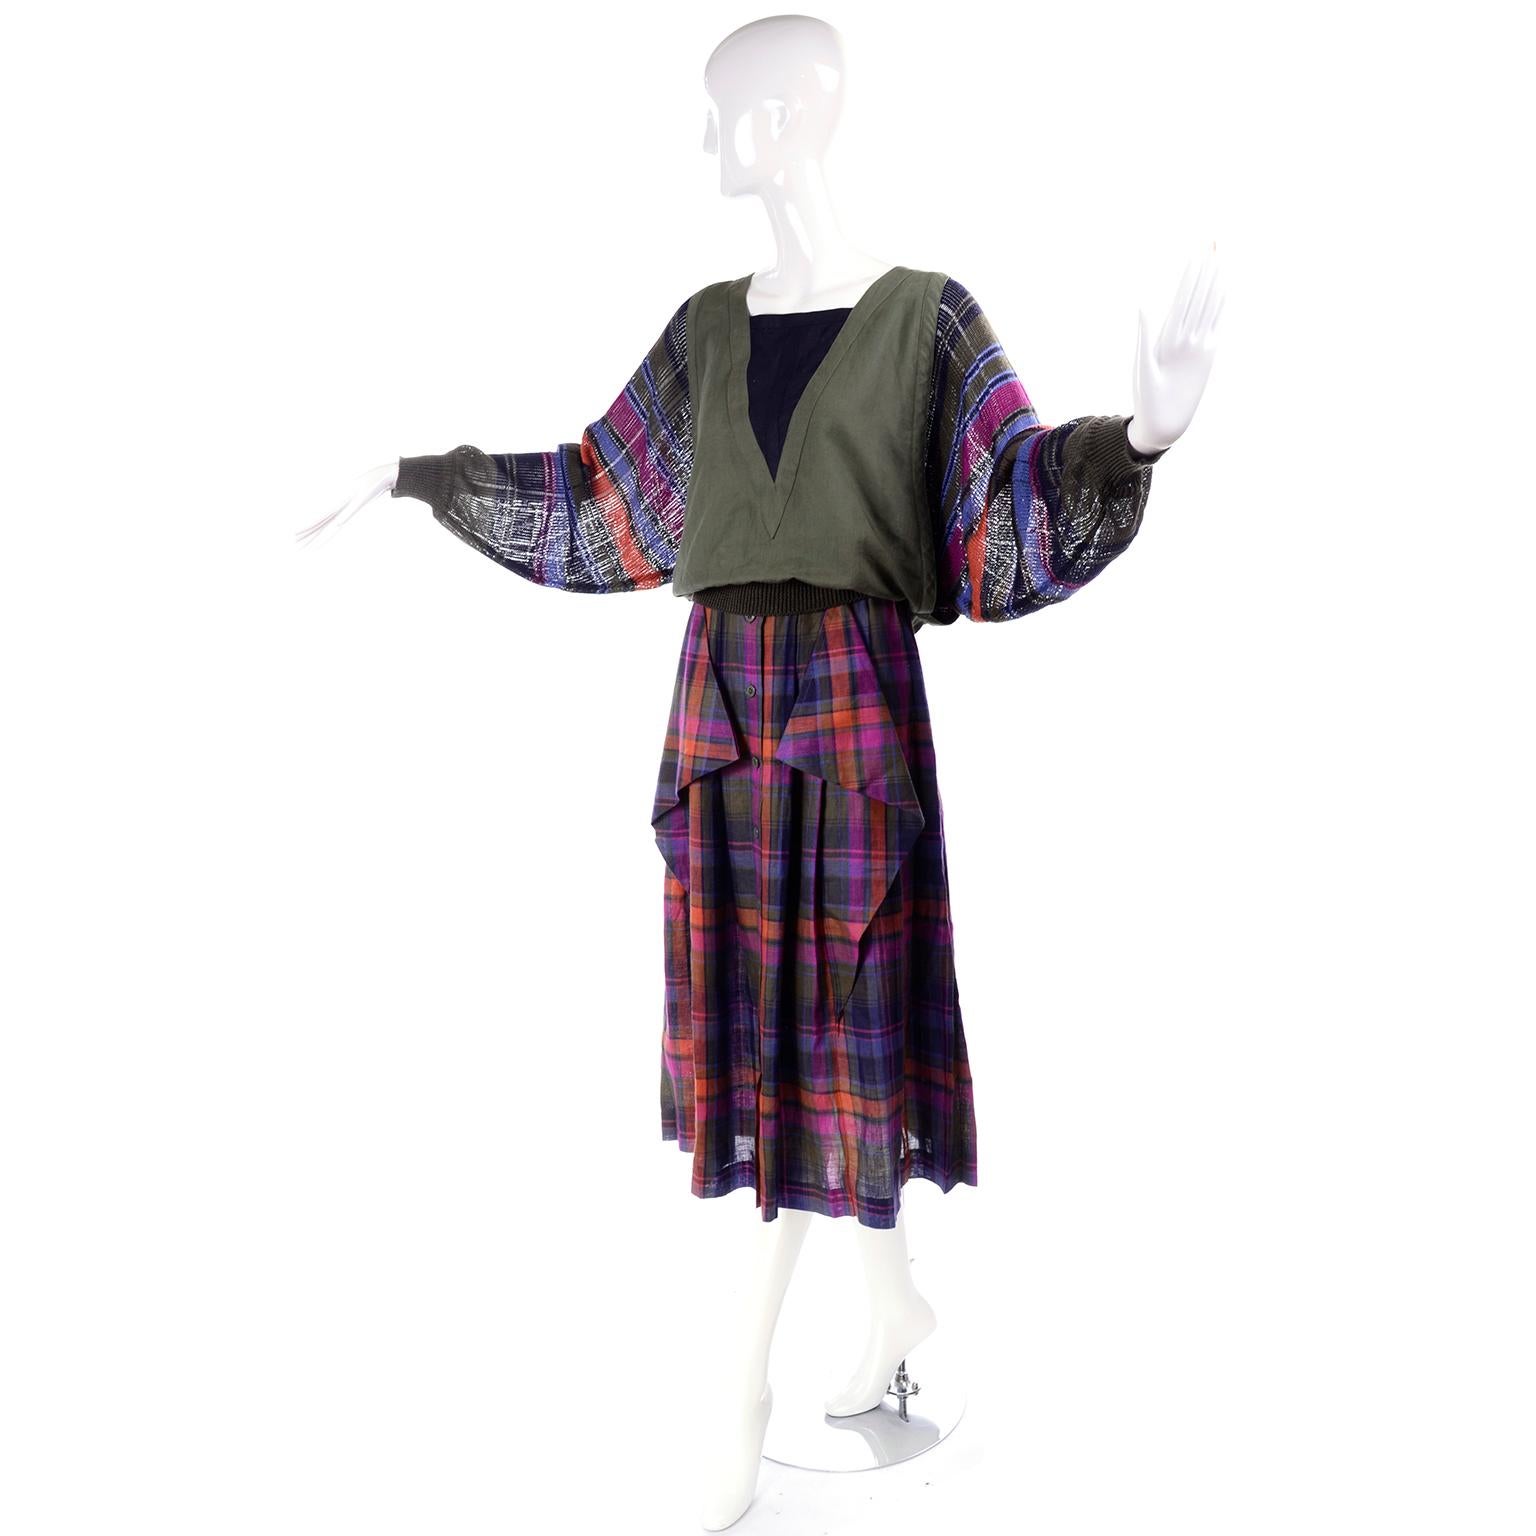 Dieses wunderschöne Ensemble aus den 1980er Jahren wurde von Margaretha Ley für Escada entworfen. Das Outfit hat einen plissierten Rock in Midilänge, der vorne geknöpft wird. Es ist aus Leinen mit einem olivgrünen, rosa, blauen und orangefarbenen